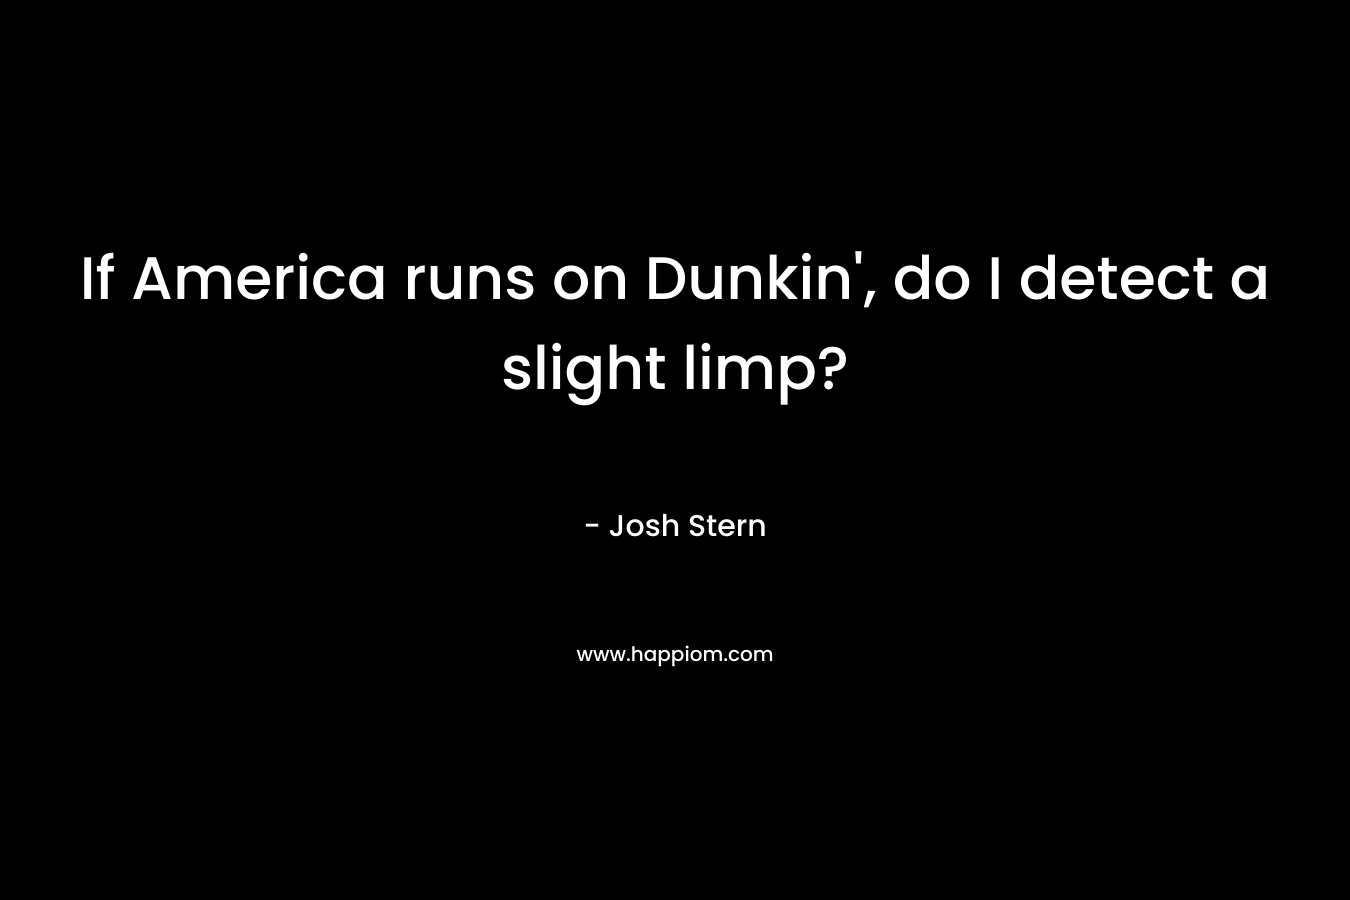 If America runs on Dunkin', do I detect a slight limp?